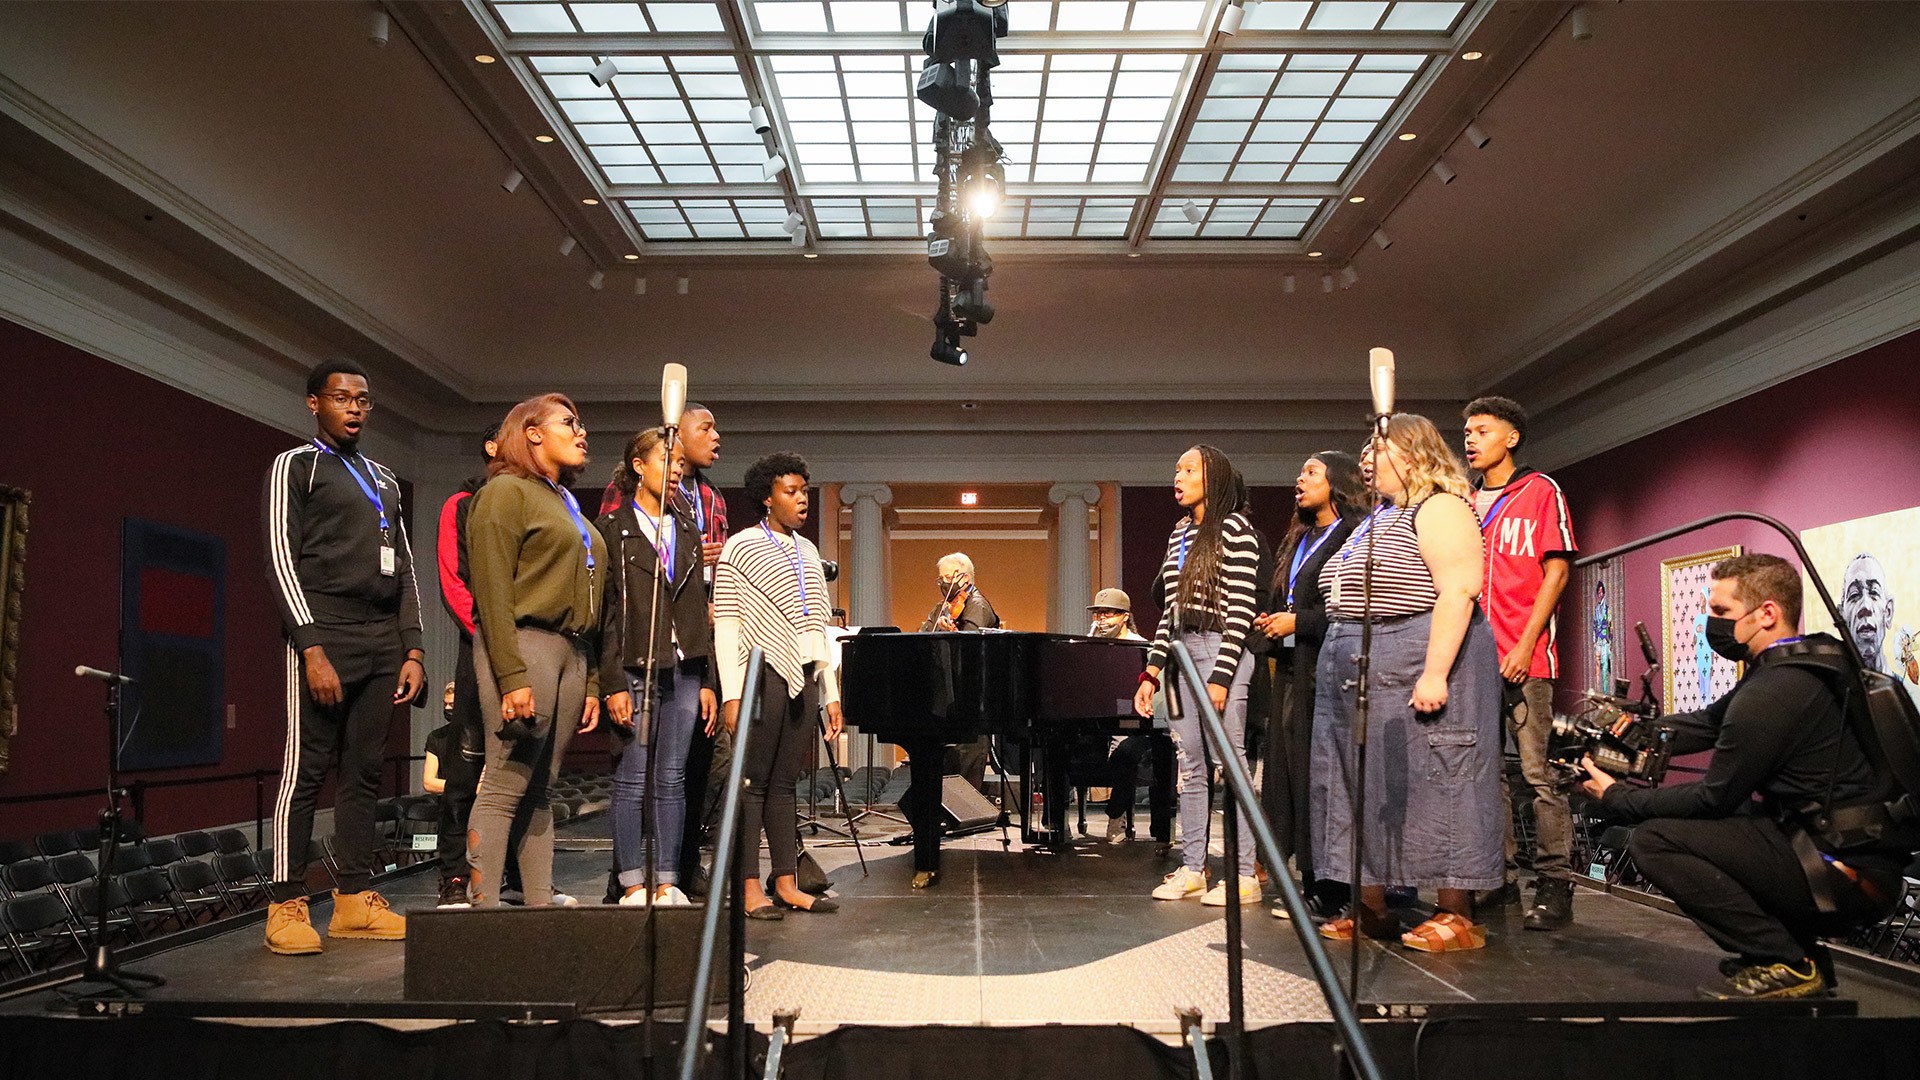 BGSU Voices practice singing in the Toledo Museum 